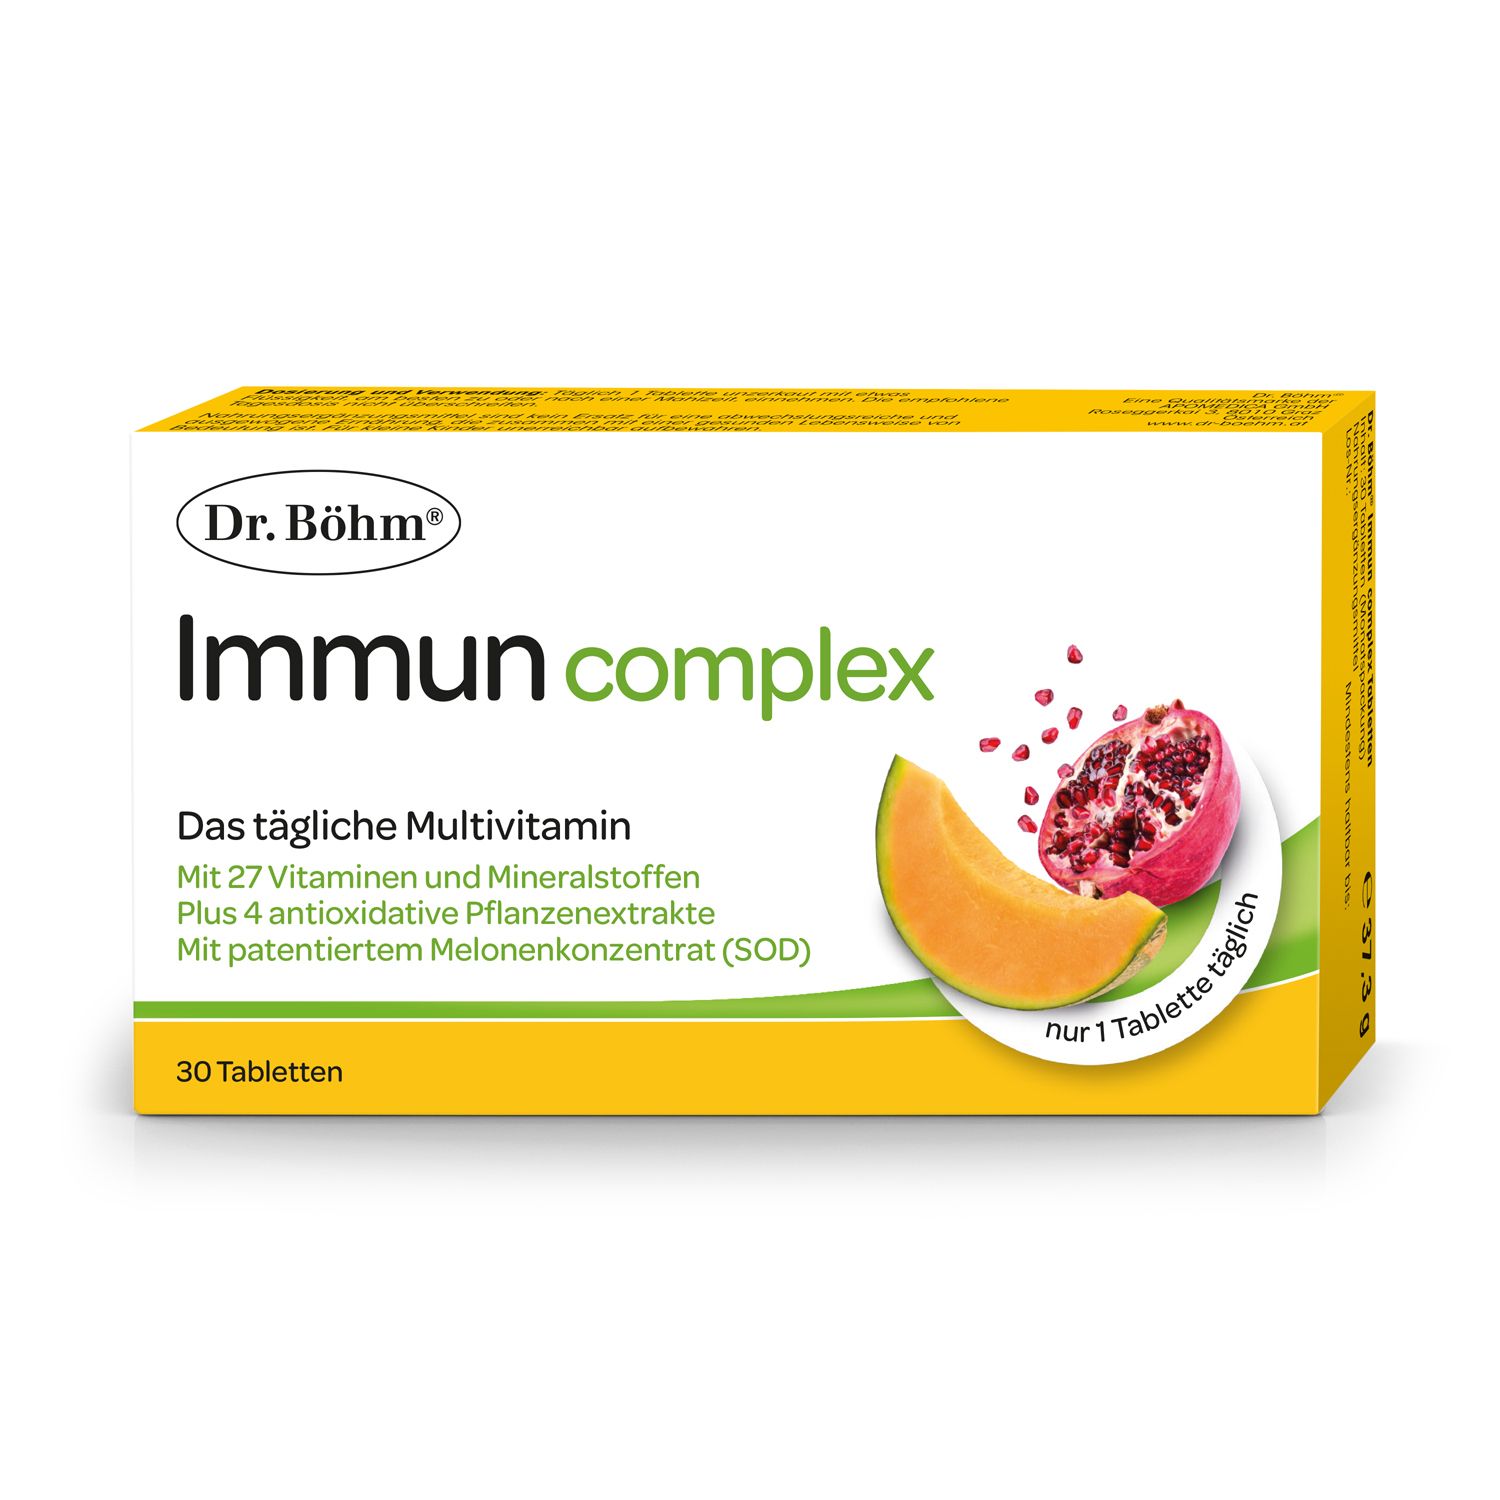 Dr. Böhm® Immun complex